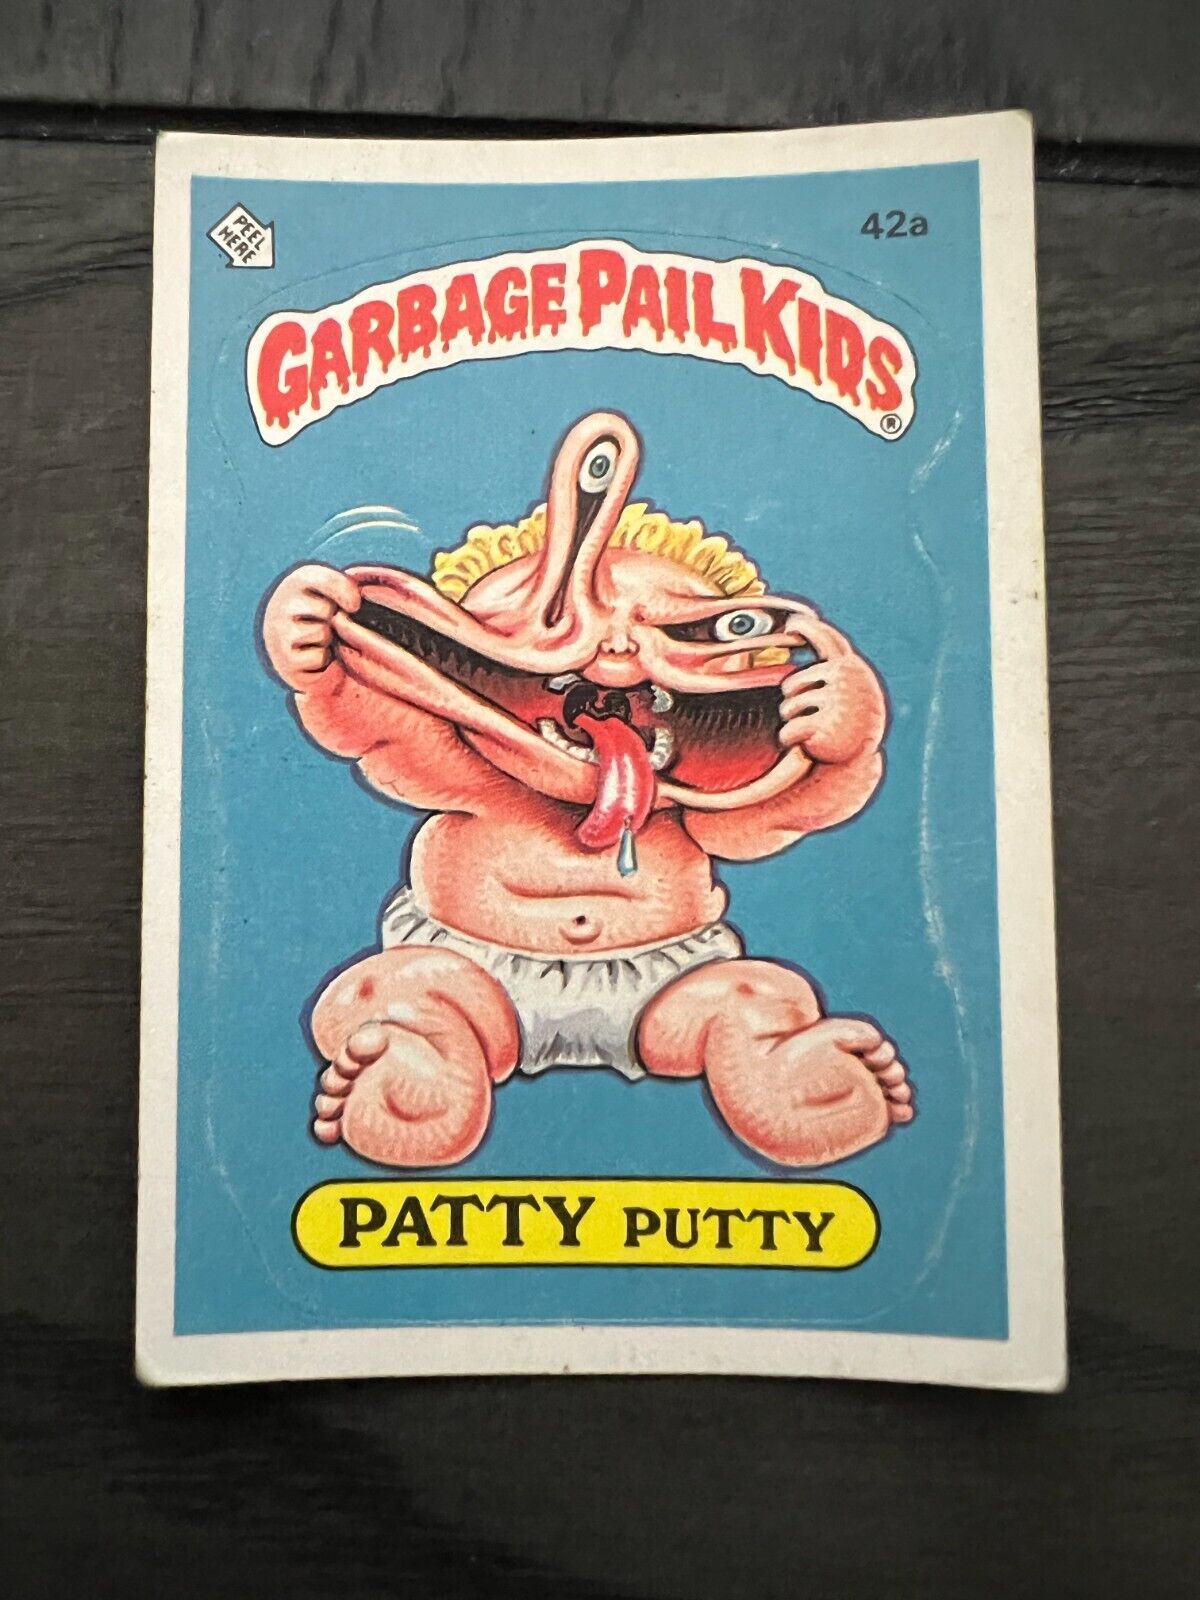 POOR 1985 Garbage Pail Kids Series 2 Complete Your Set GPK OS2 U Pick POOR Read